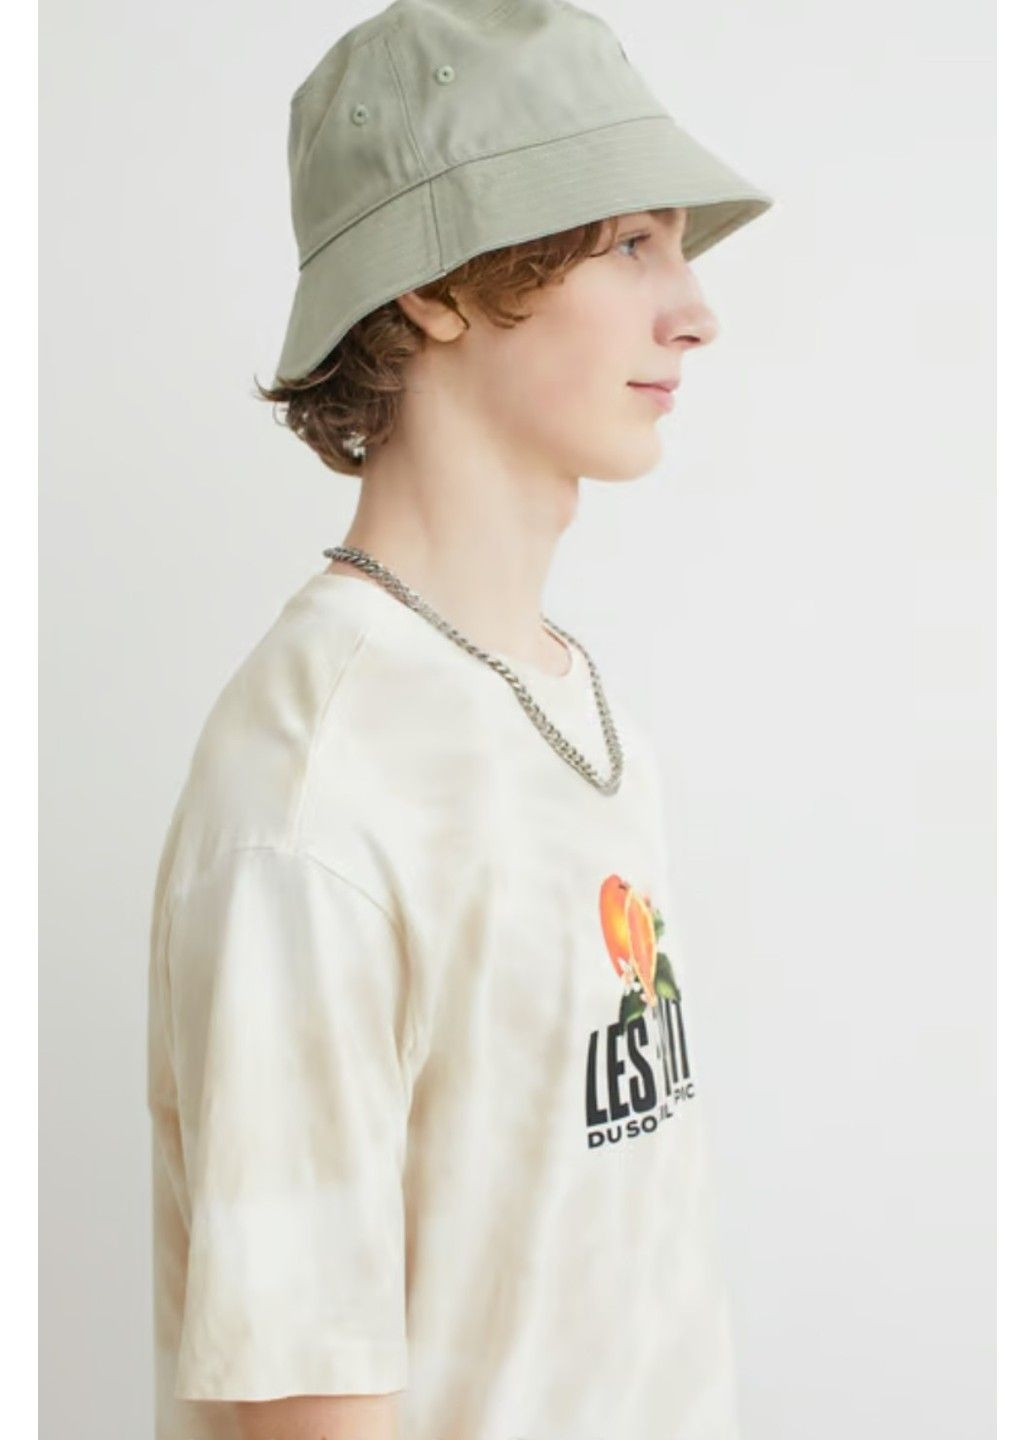 Світло-бежева чоловіча футболка з принтом вільного крою н&м (56756) xxl світло-бежева H&M